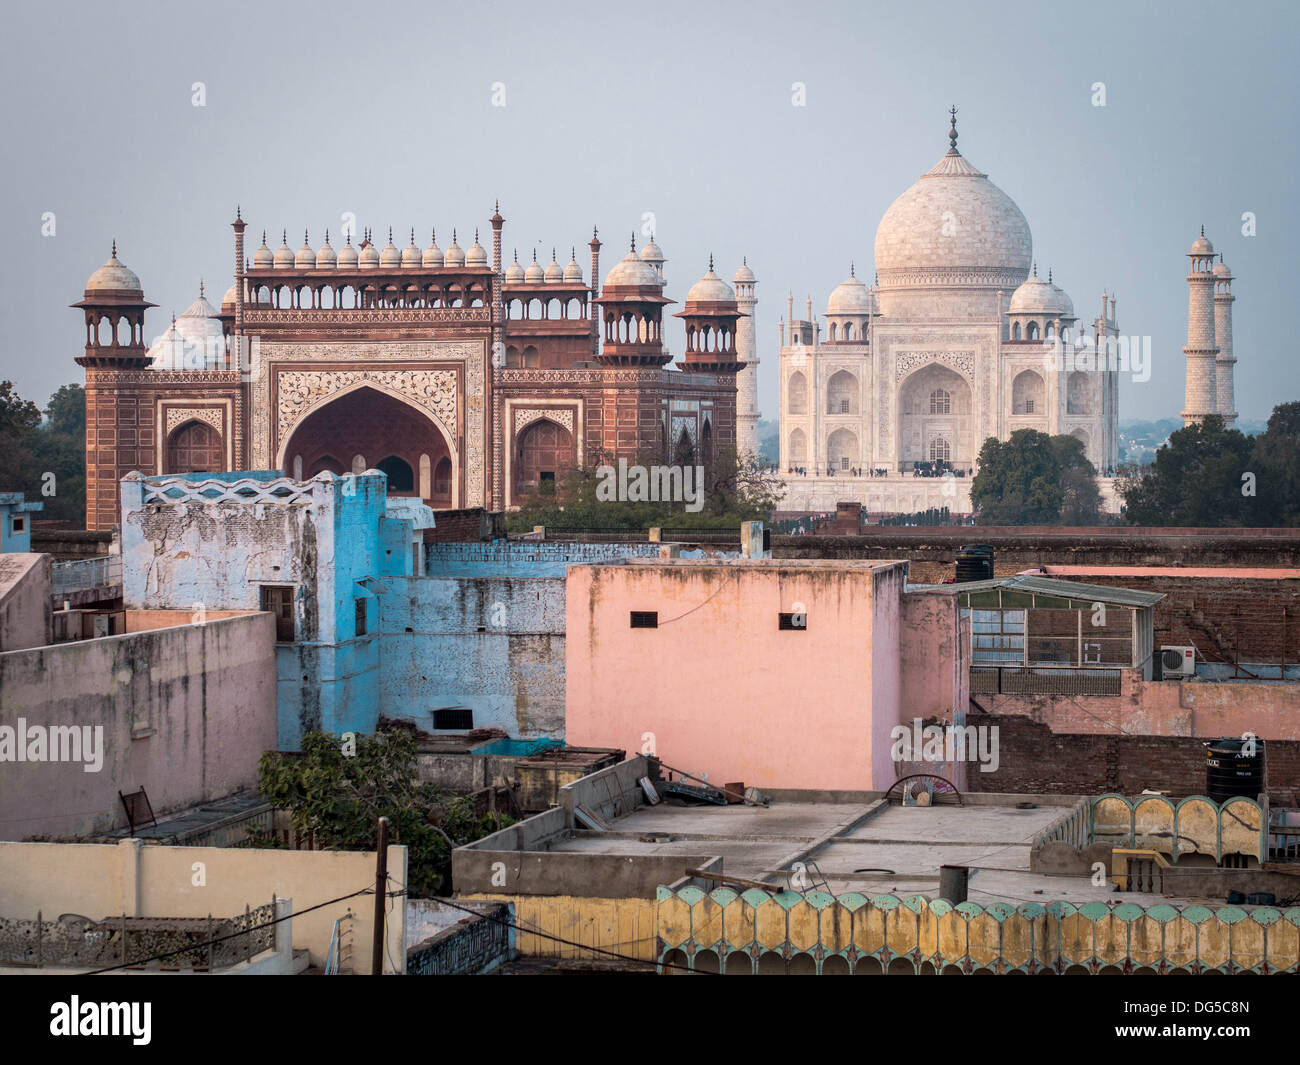 Das Taj Mahal gesehen von einem nahe gelegenen Dach in Agra, Indien. Stockfoto